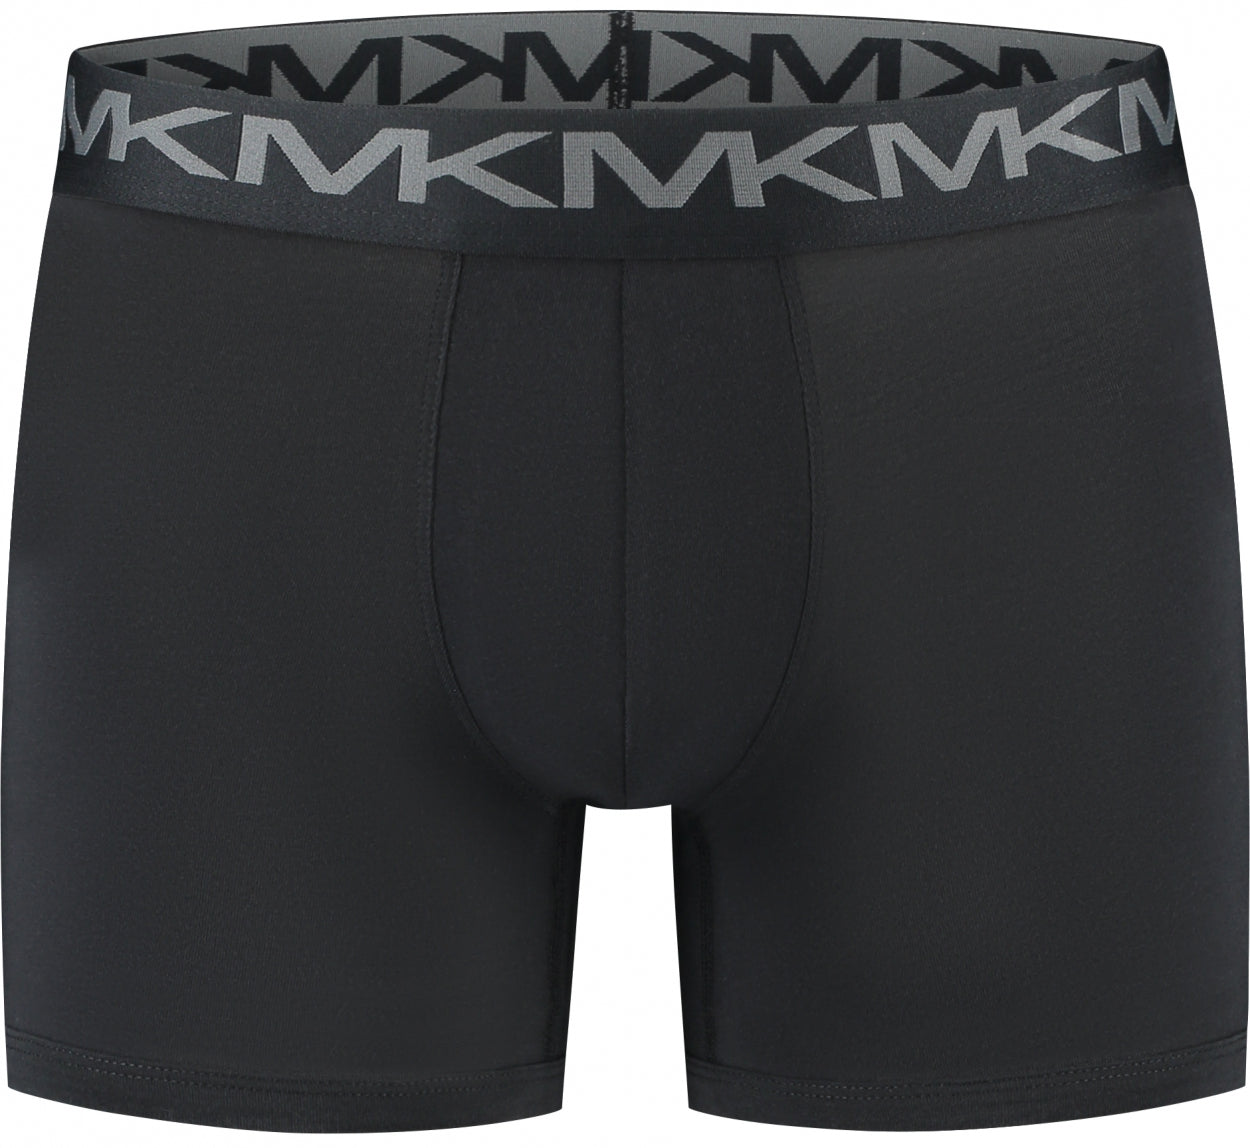 Michael Kors Classic Black Boxers (3 Pack)